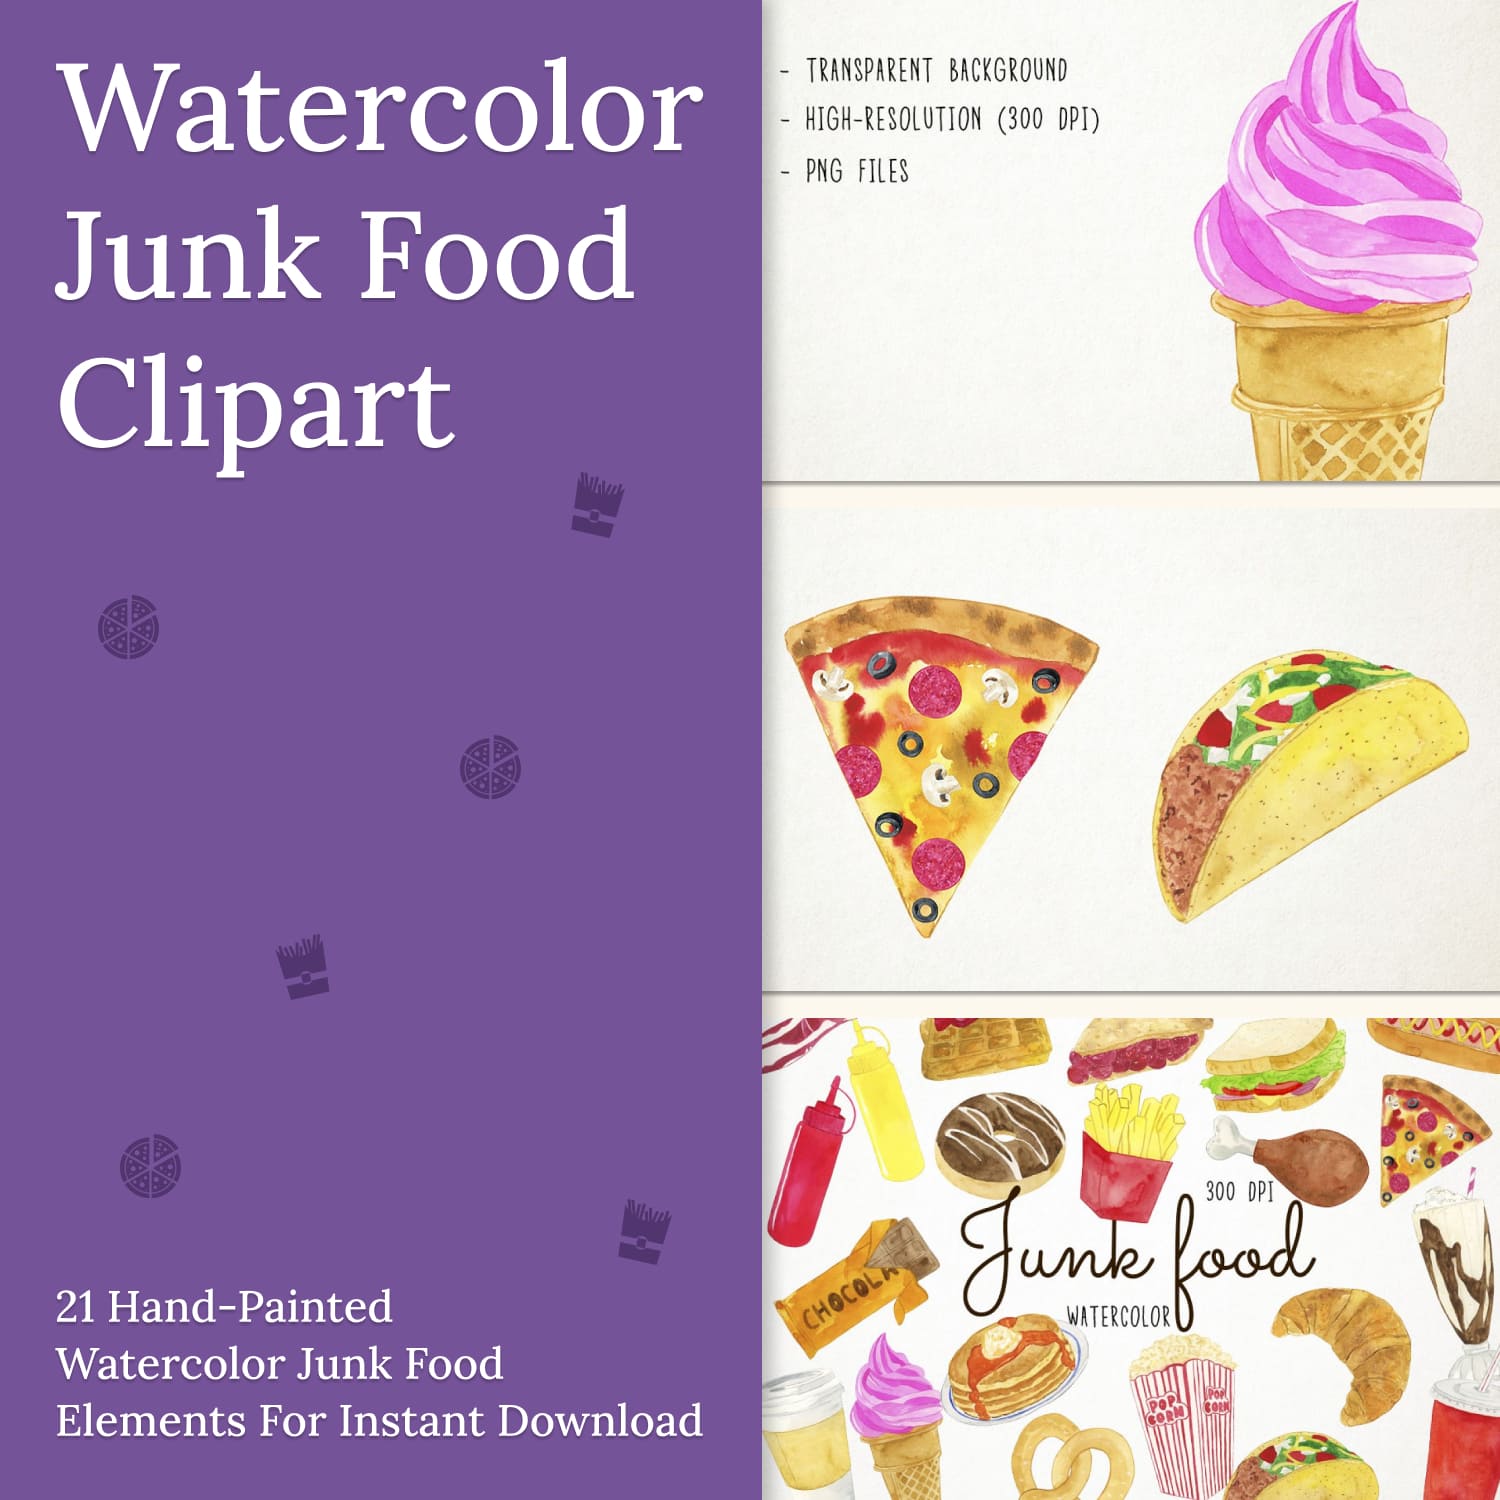 Watercolor Junk Food Clipart.